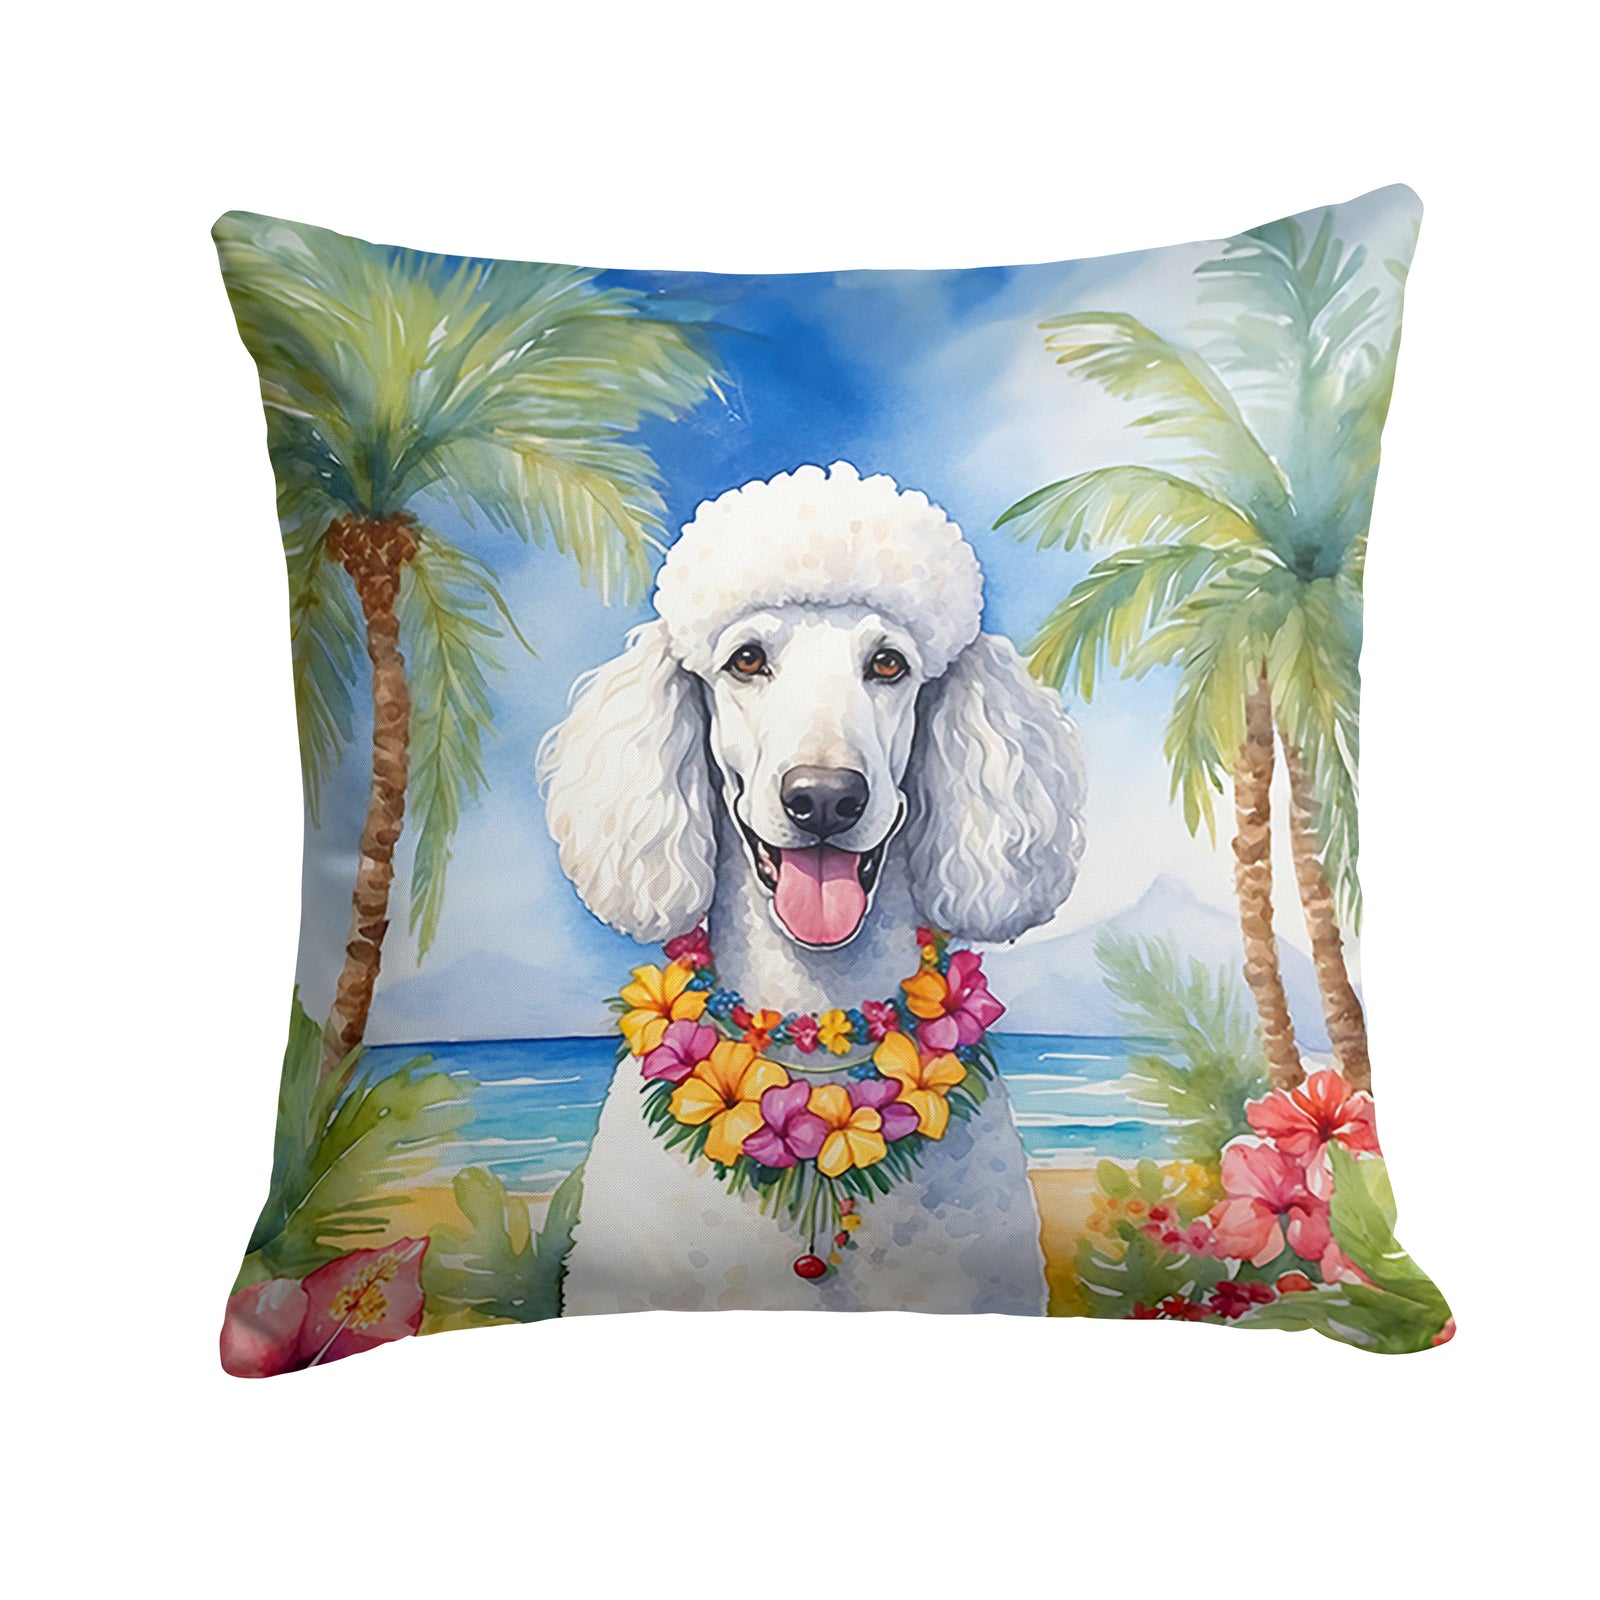 Buy this White Poodle Luau Throw Pillow